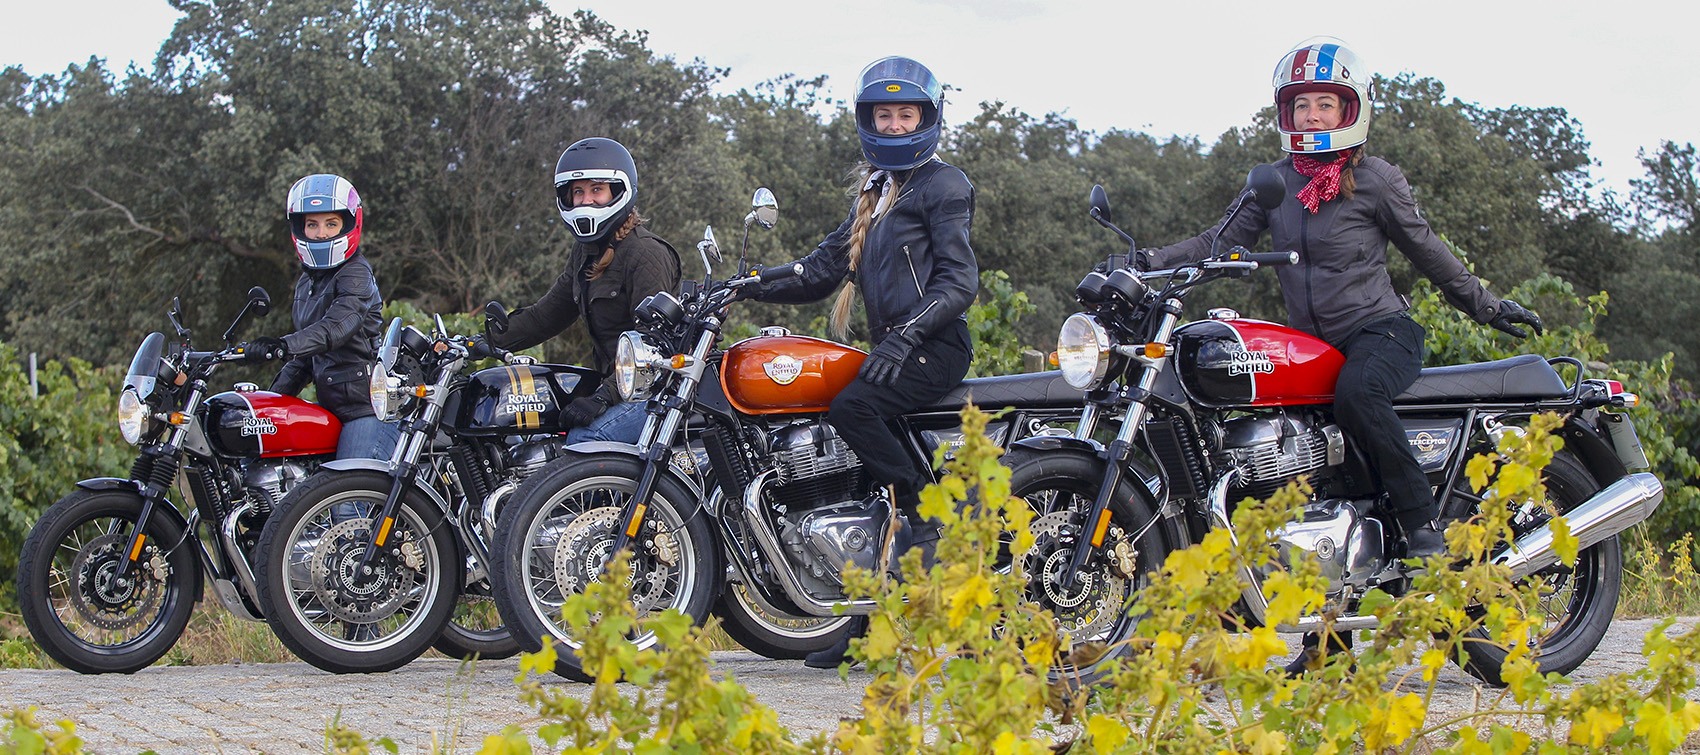 Chicas en motos Royal Enfield